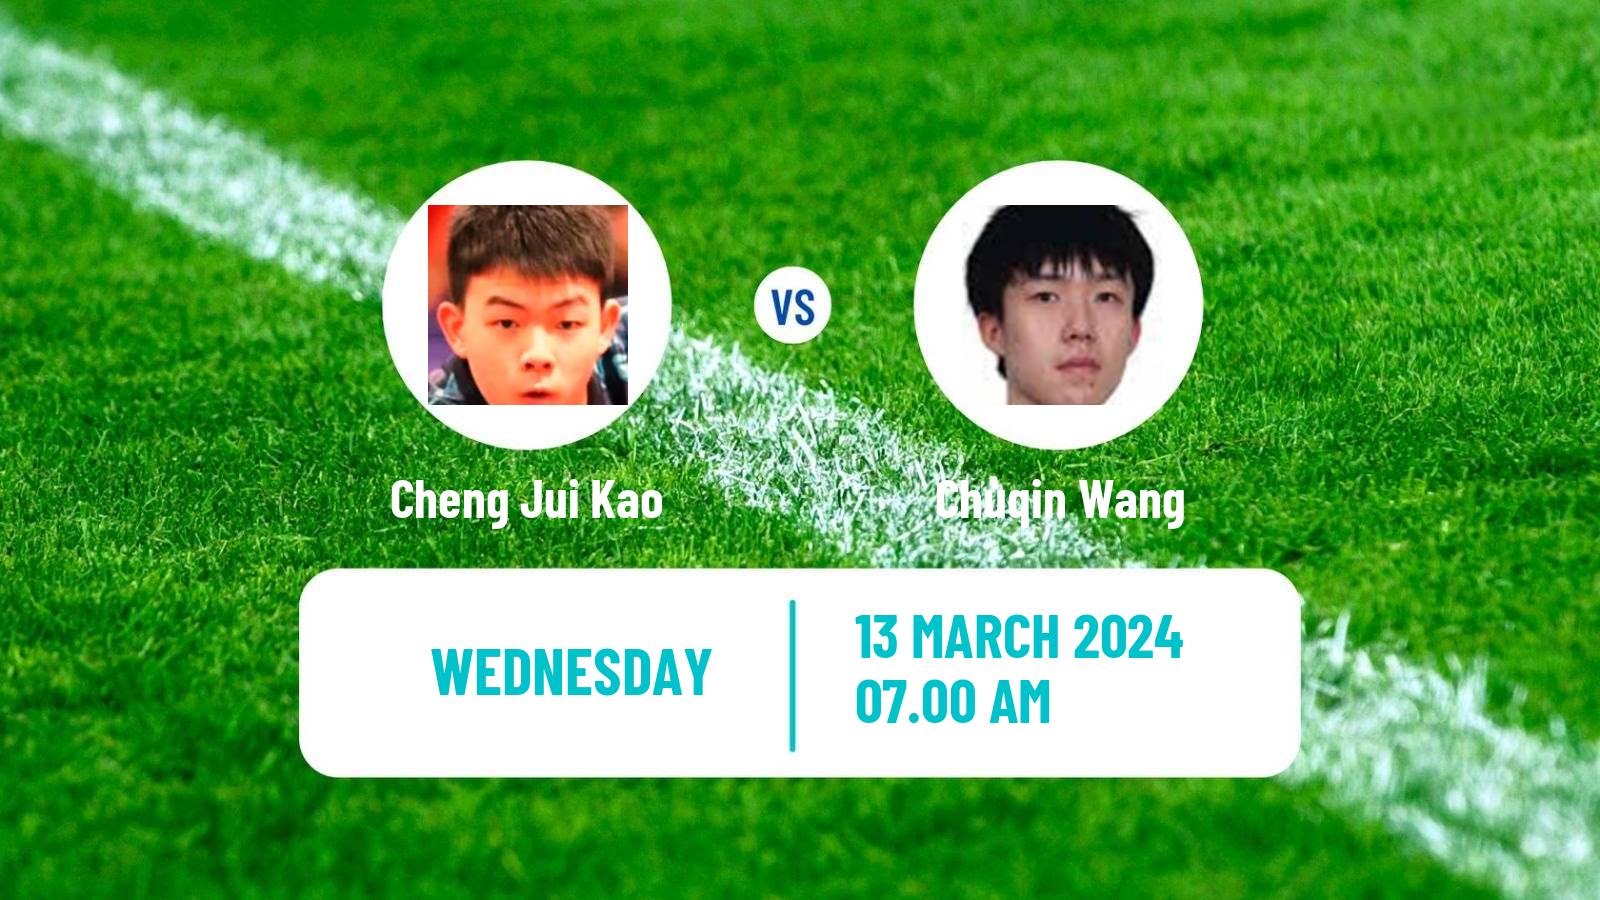 Table tennis Singapore Smash Men Cheng Jui Kao - Chuqin Wang